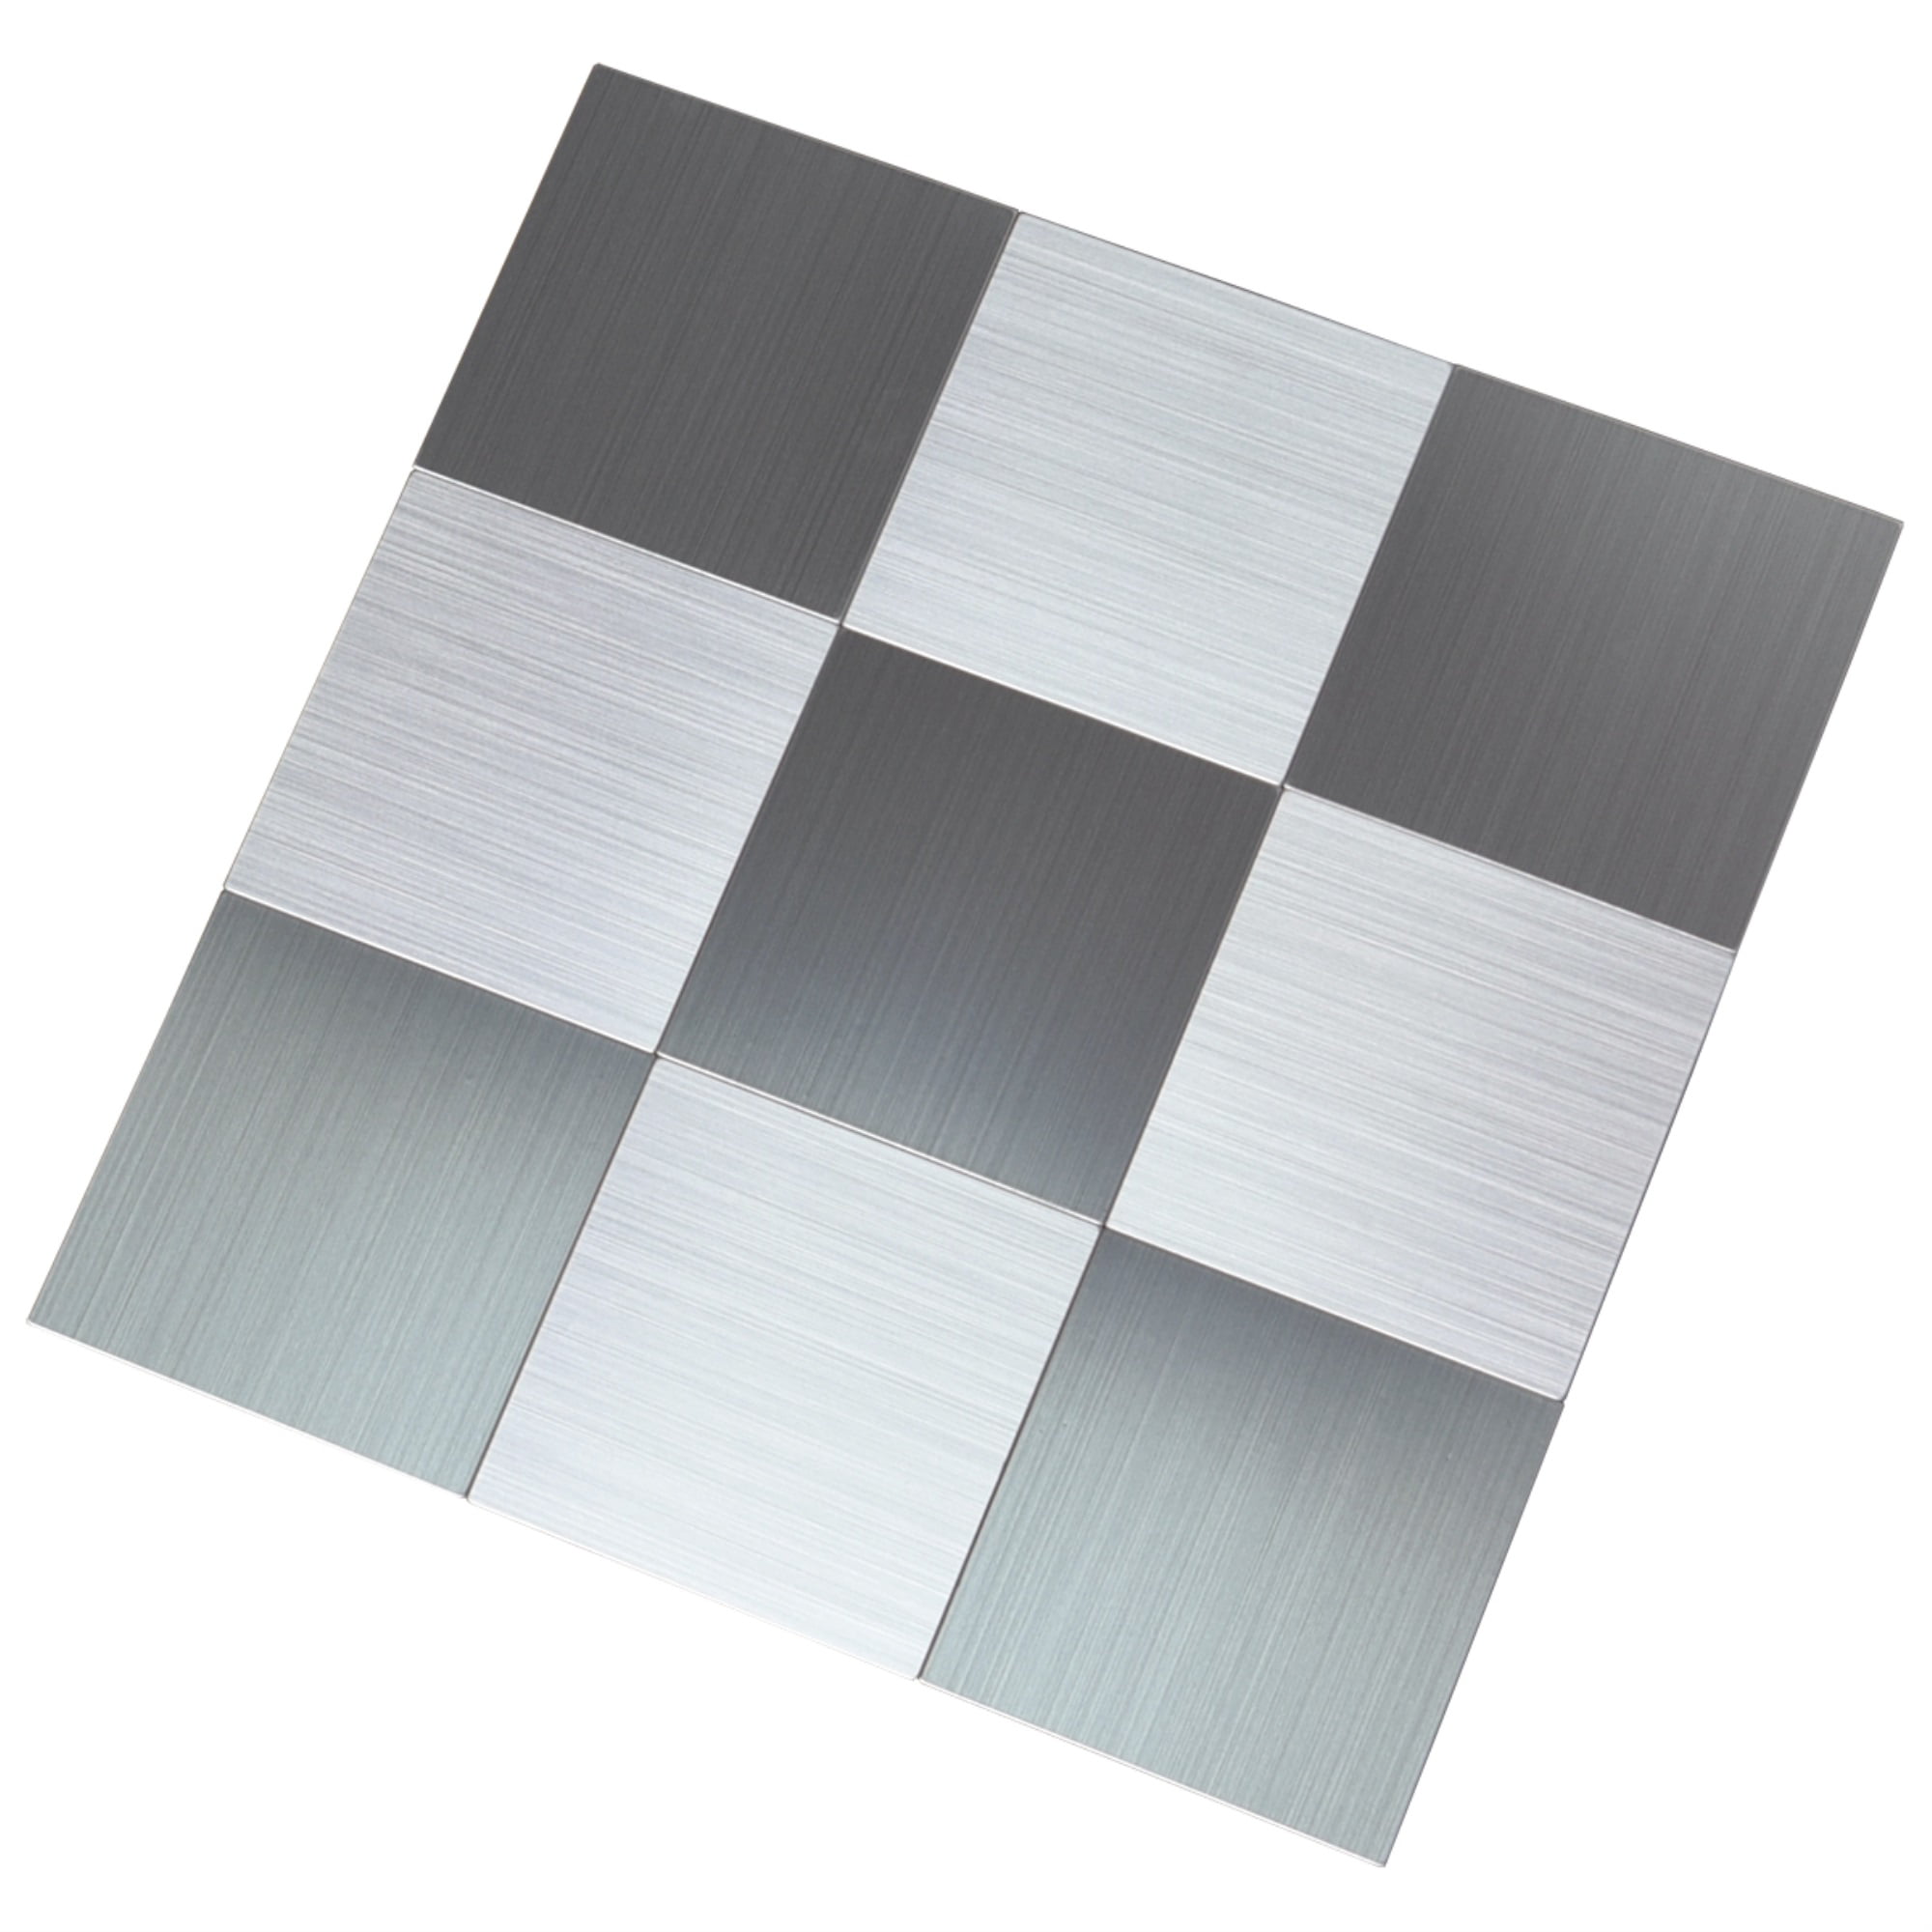 Backsplash Tile for Kitchen Peel and Stick Stainless Steel Metal Backsplash Tiles in Brushed Black Silver 11.85''x11.85'', 5 Pieces 